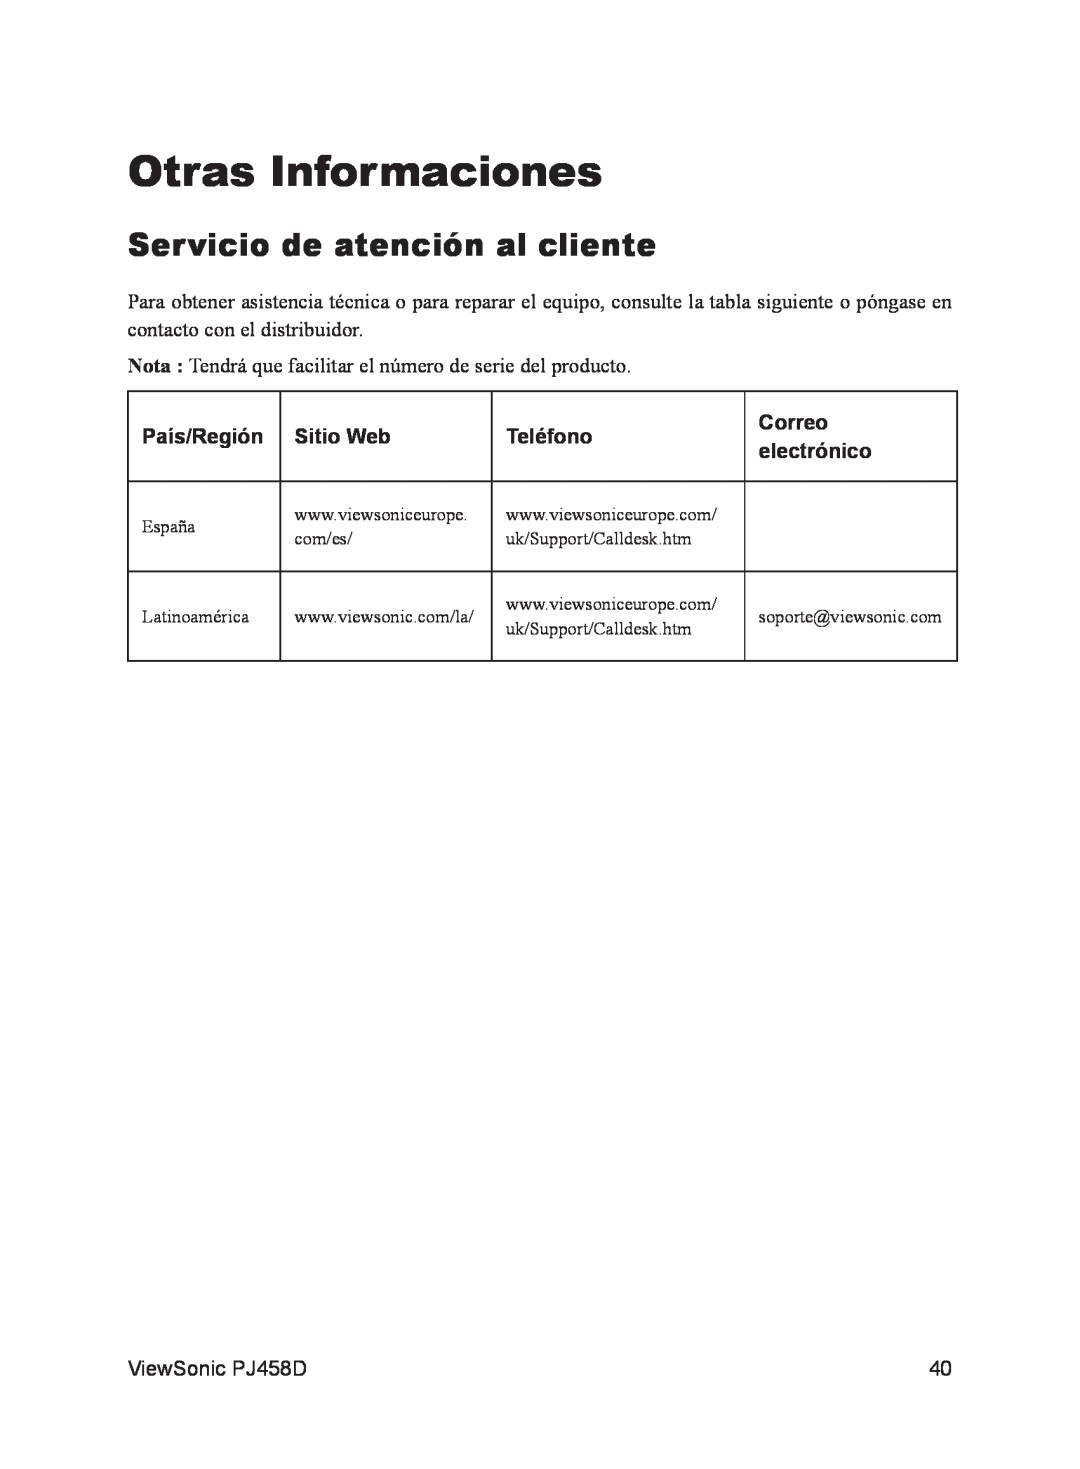 ViewSonic VS10872 manual Otras Informaciones, Servicio de atención al cliente, País/Región, Sitio Web, Teléfono, Correo 